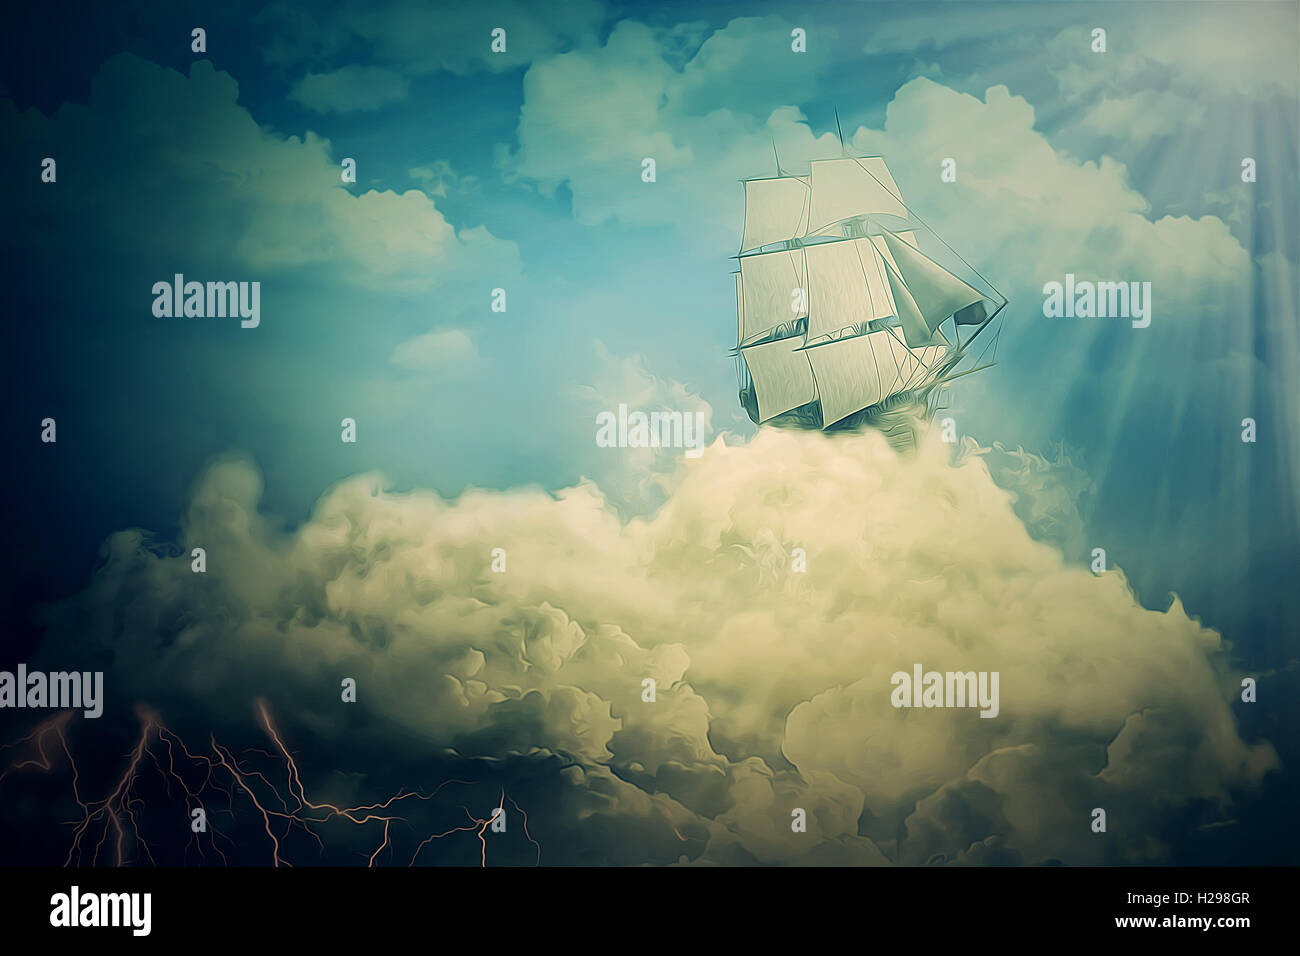 Avec un vieux screensaver surréaliste navire naviguant dans les nuages Banque D'Images